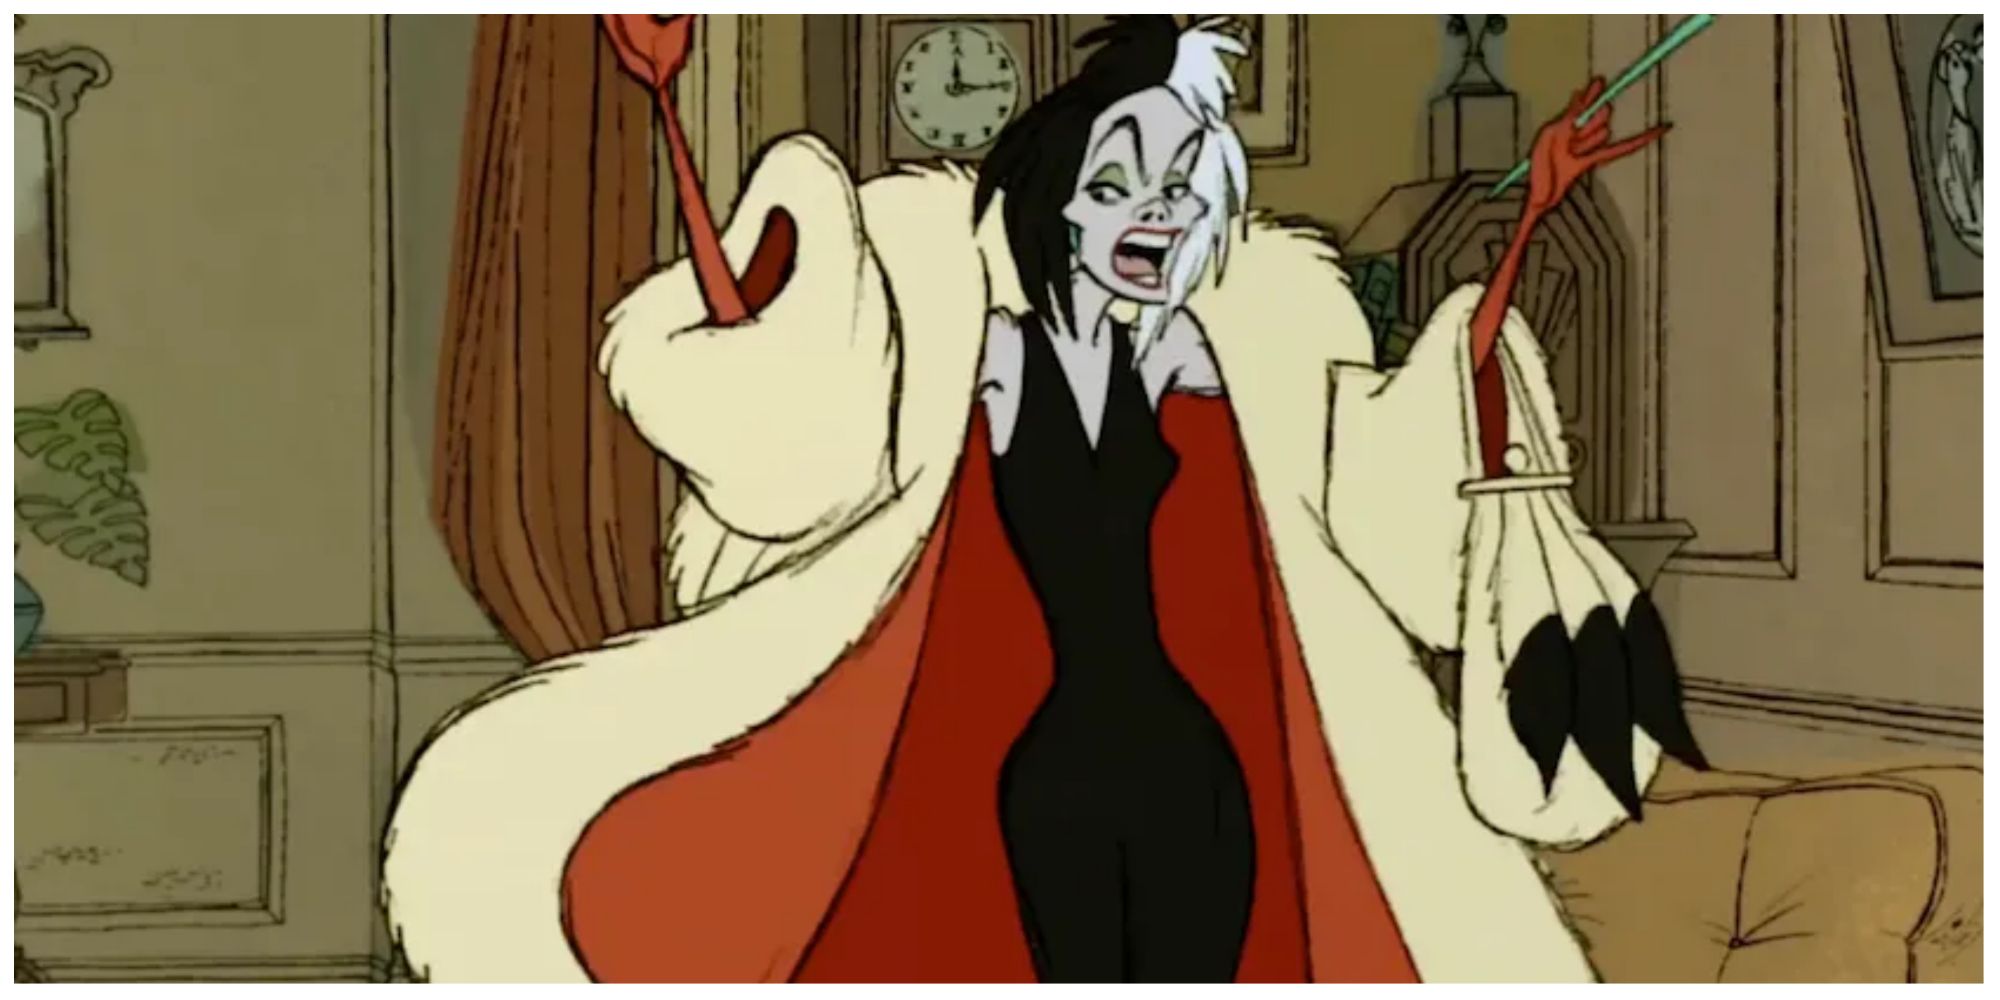 Cruella De Vil in 101 Dalamatians.